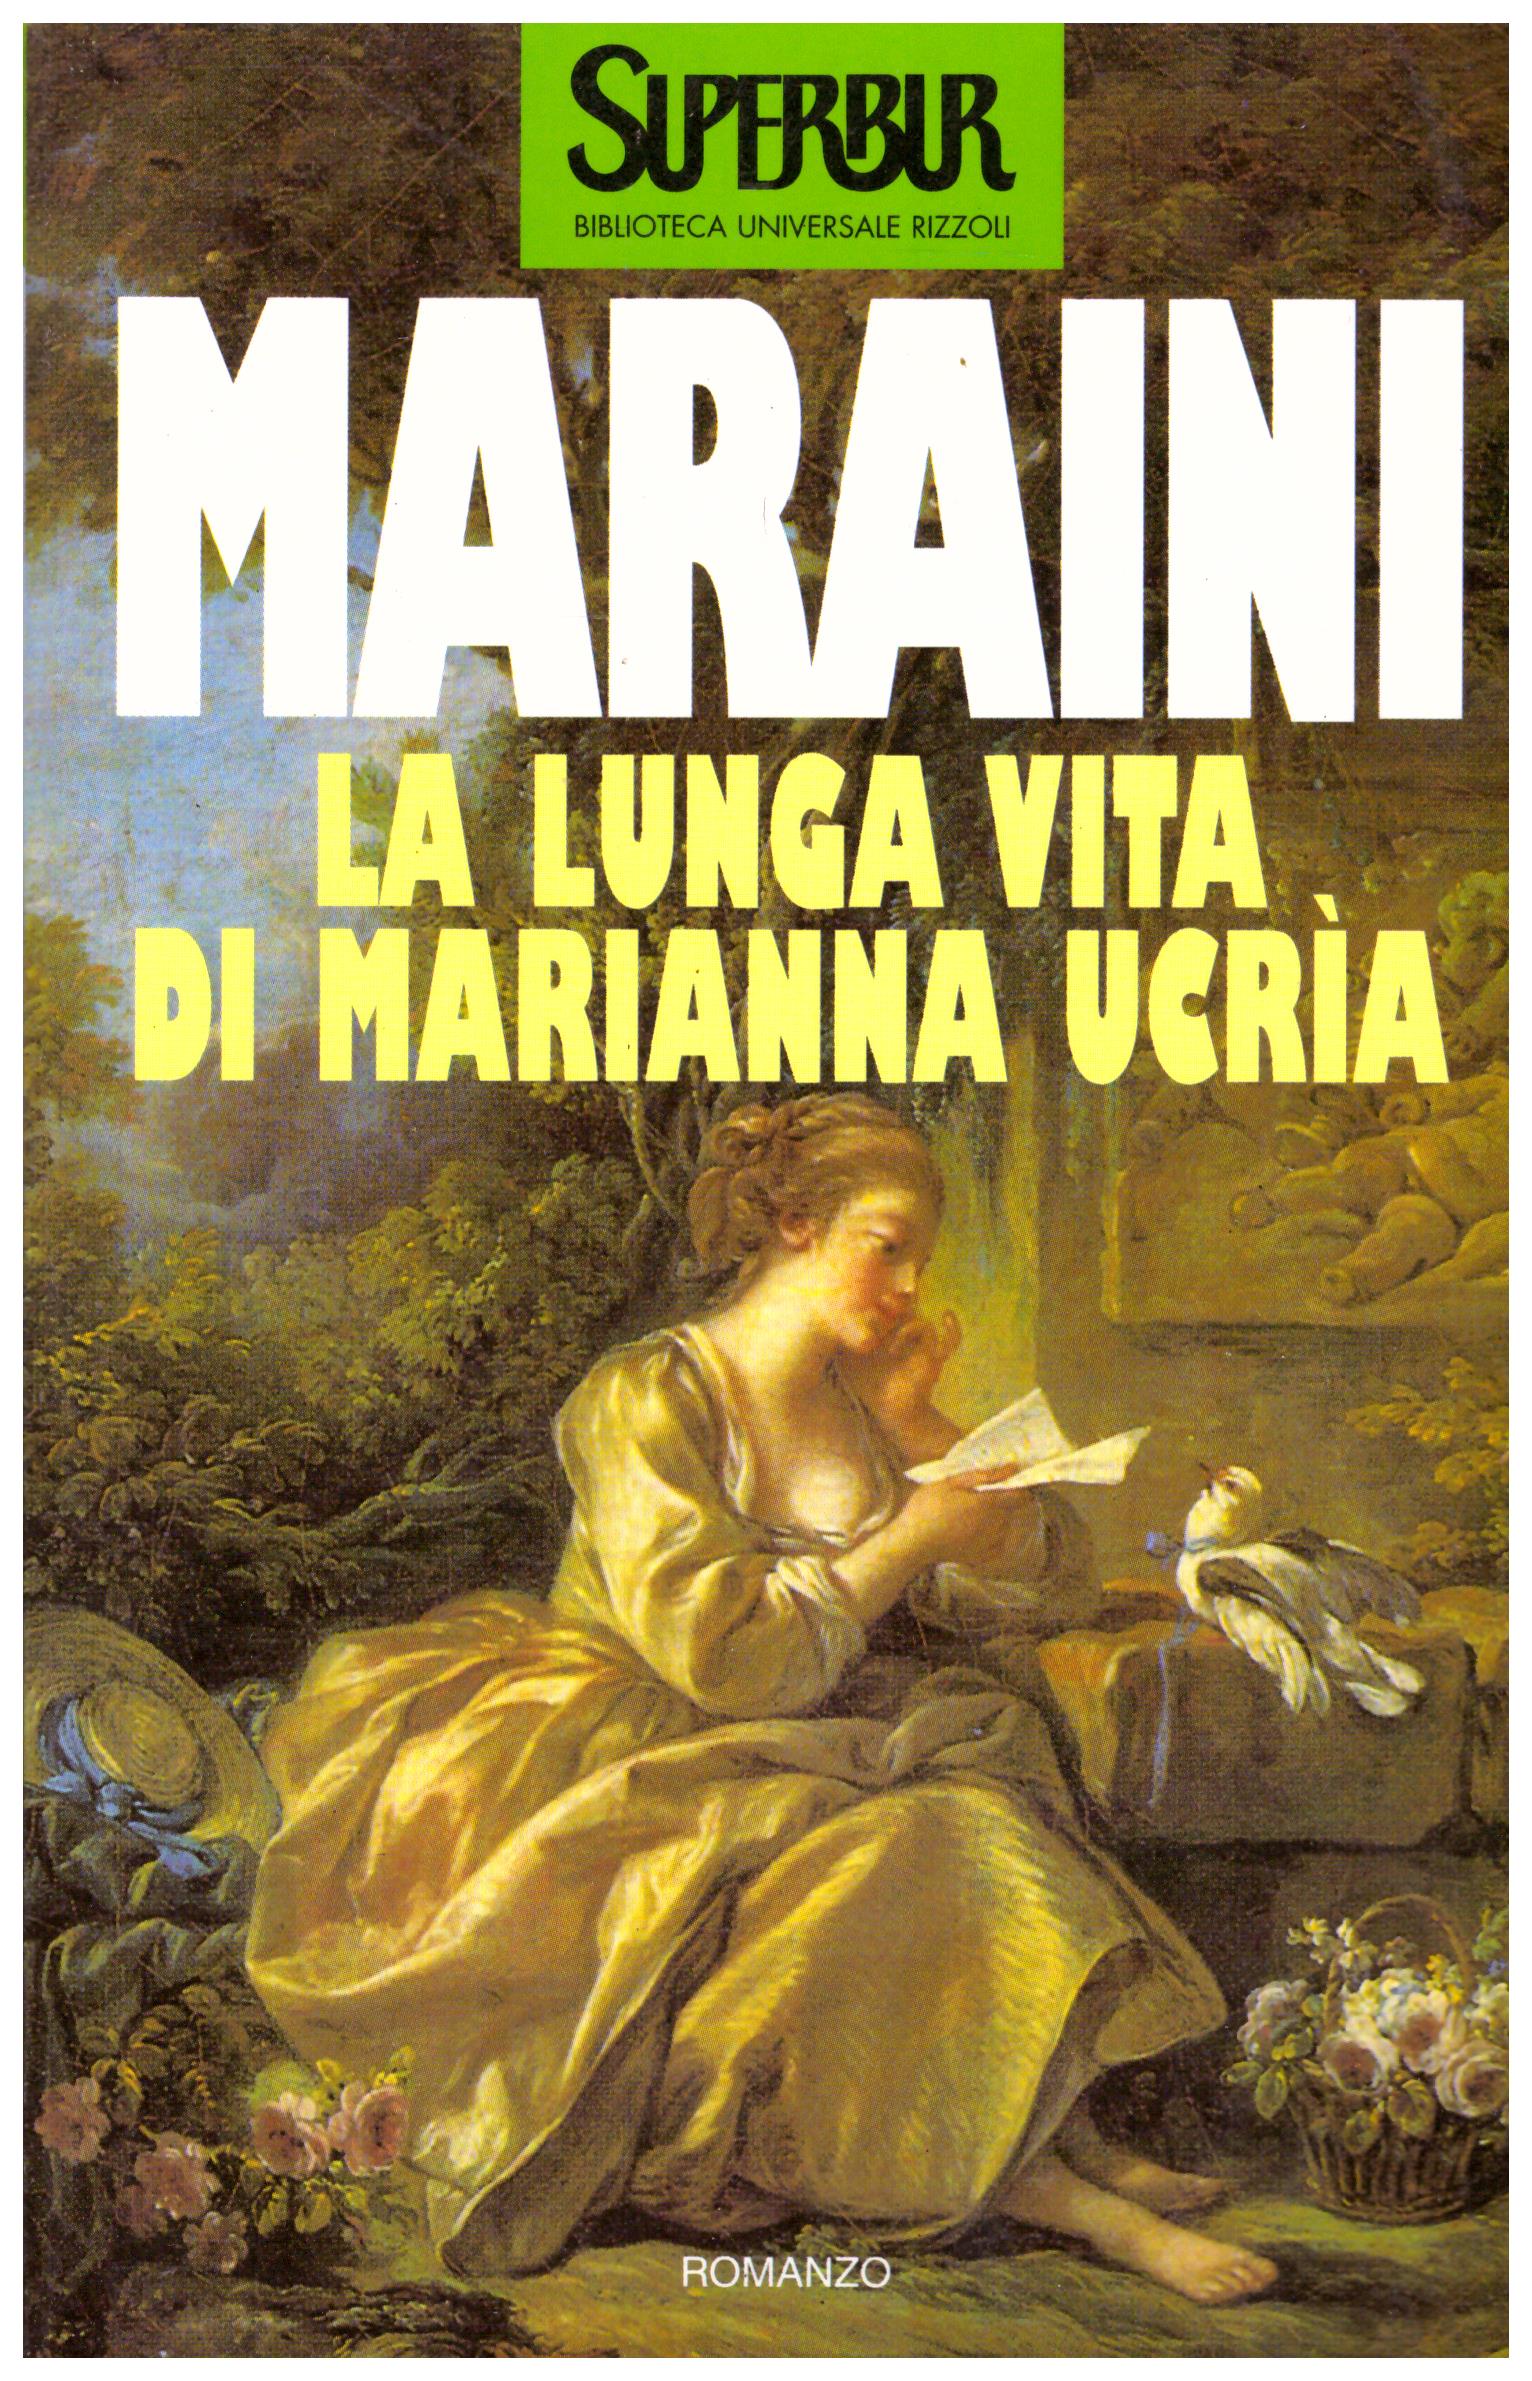 Titolo: La lunga vita di Marianna Ucrià Autore: Maraini Editore: RCS 1994